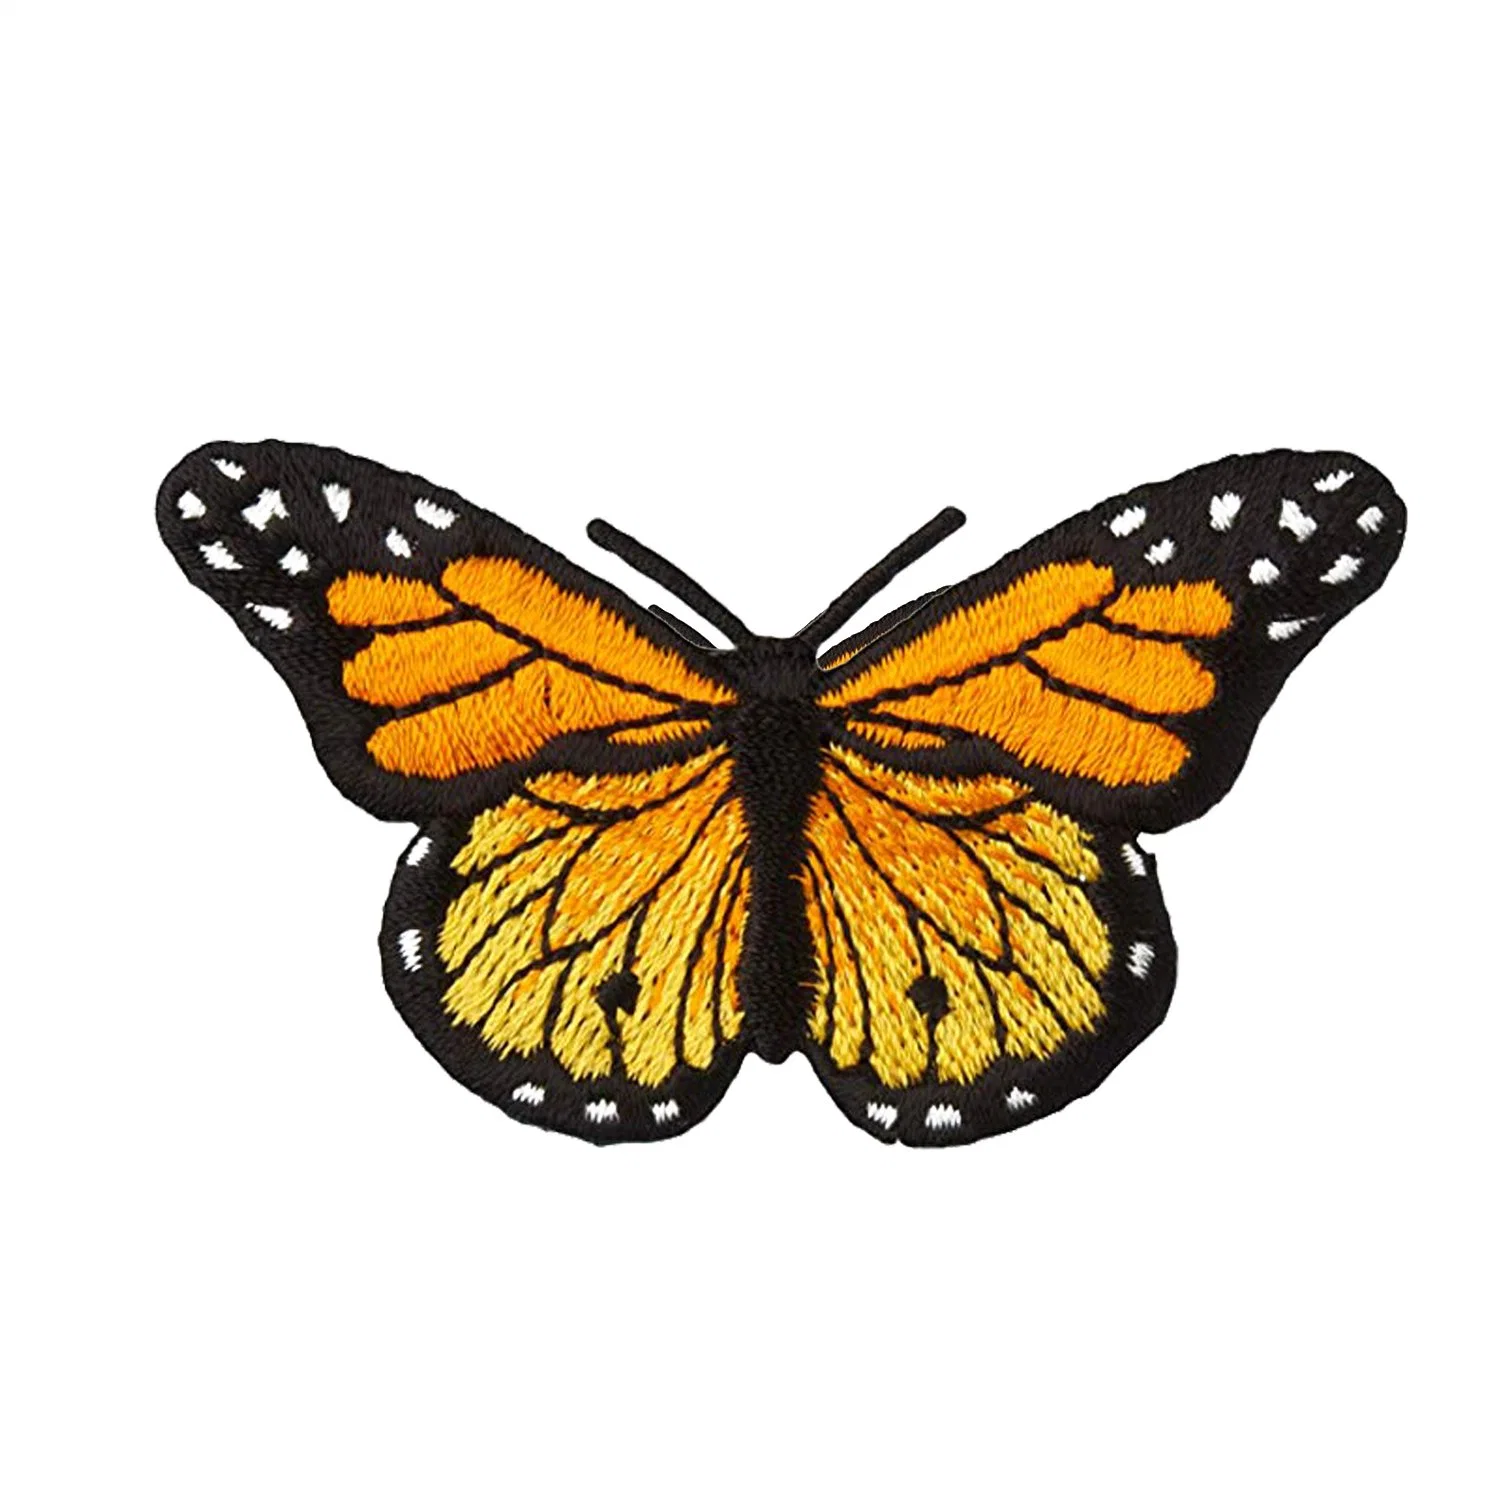 Bunte Schmetterling Patch Bügeln/Nähen auf Patch Stickerei Abzeichen Aufnäher Applikation